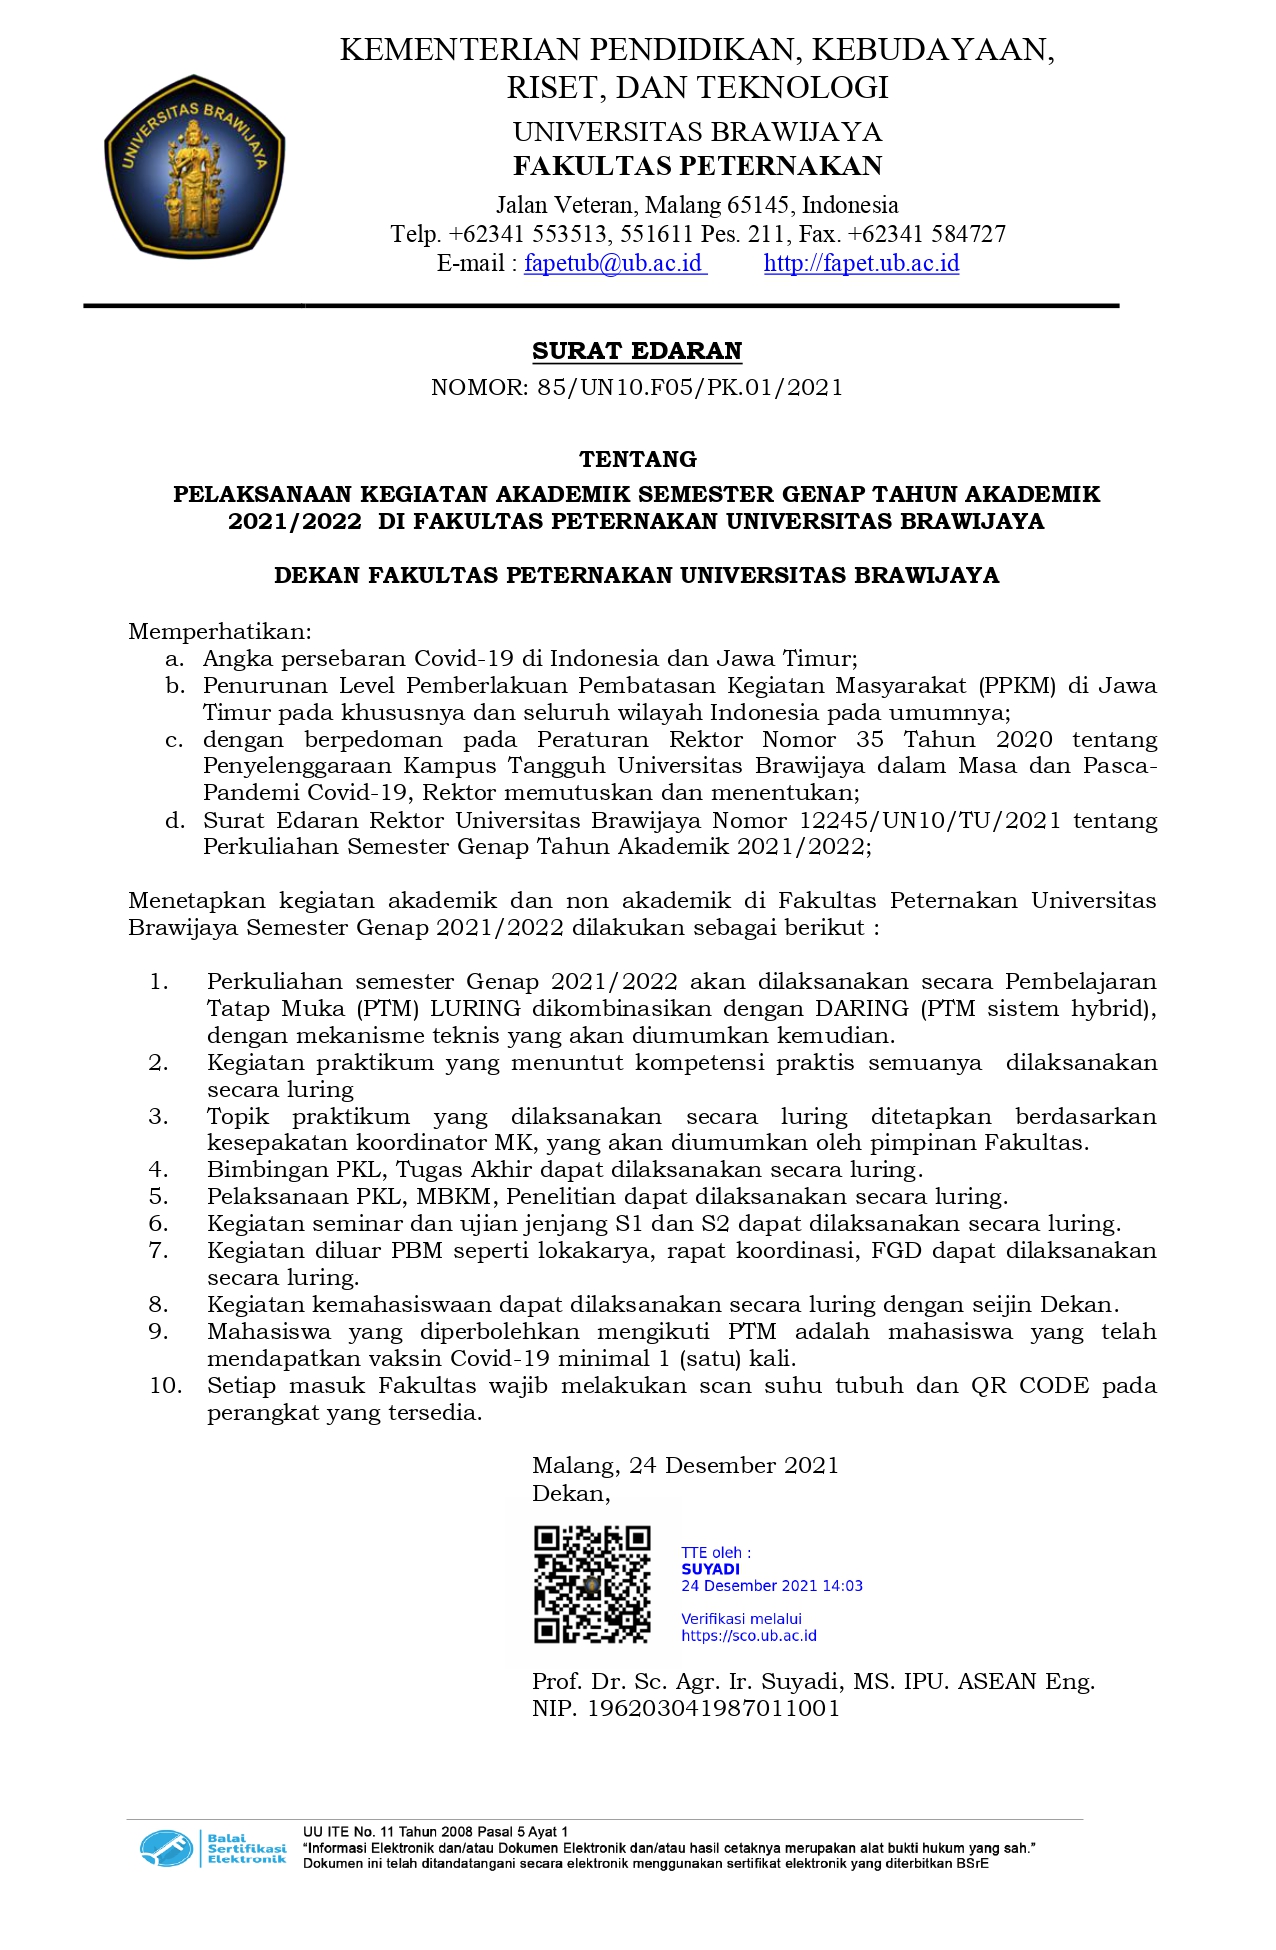 Surat Edaran Pelaksanaan Kegiatan Akademik Semester Genap TA.2021/2022 di Fakultas Peternakan Universitas Brawijaya